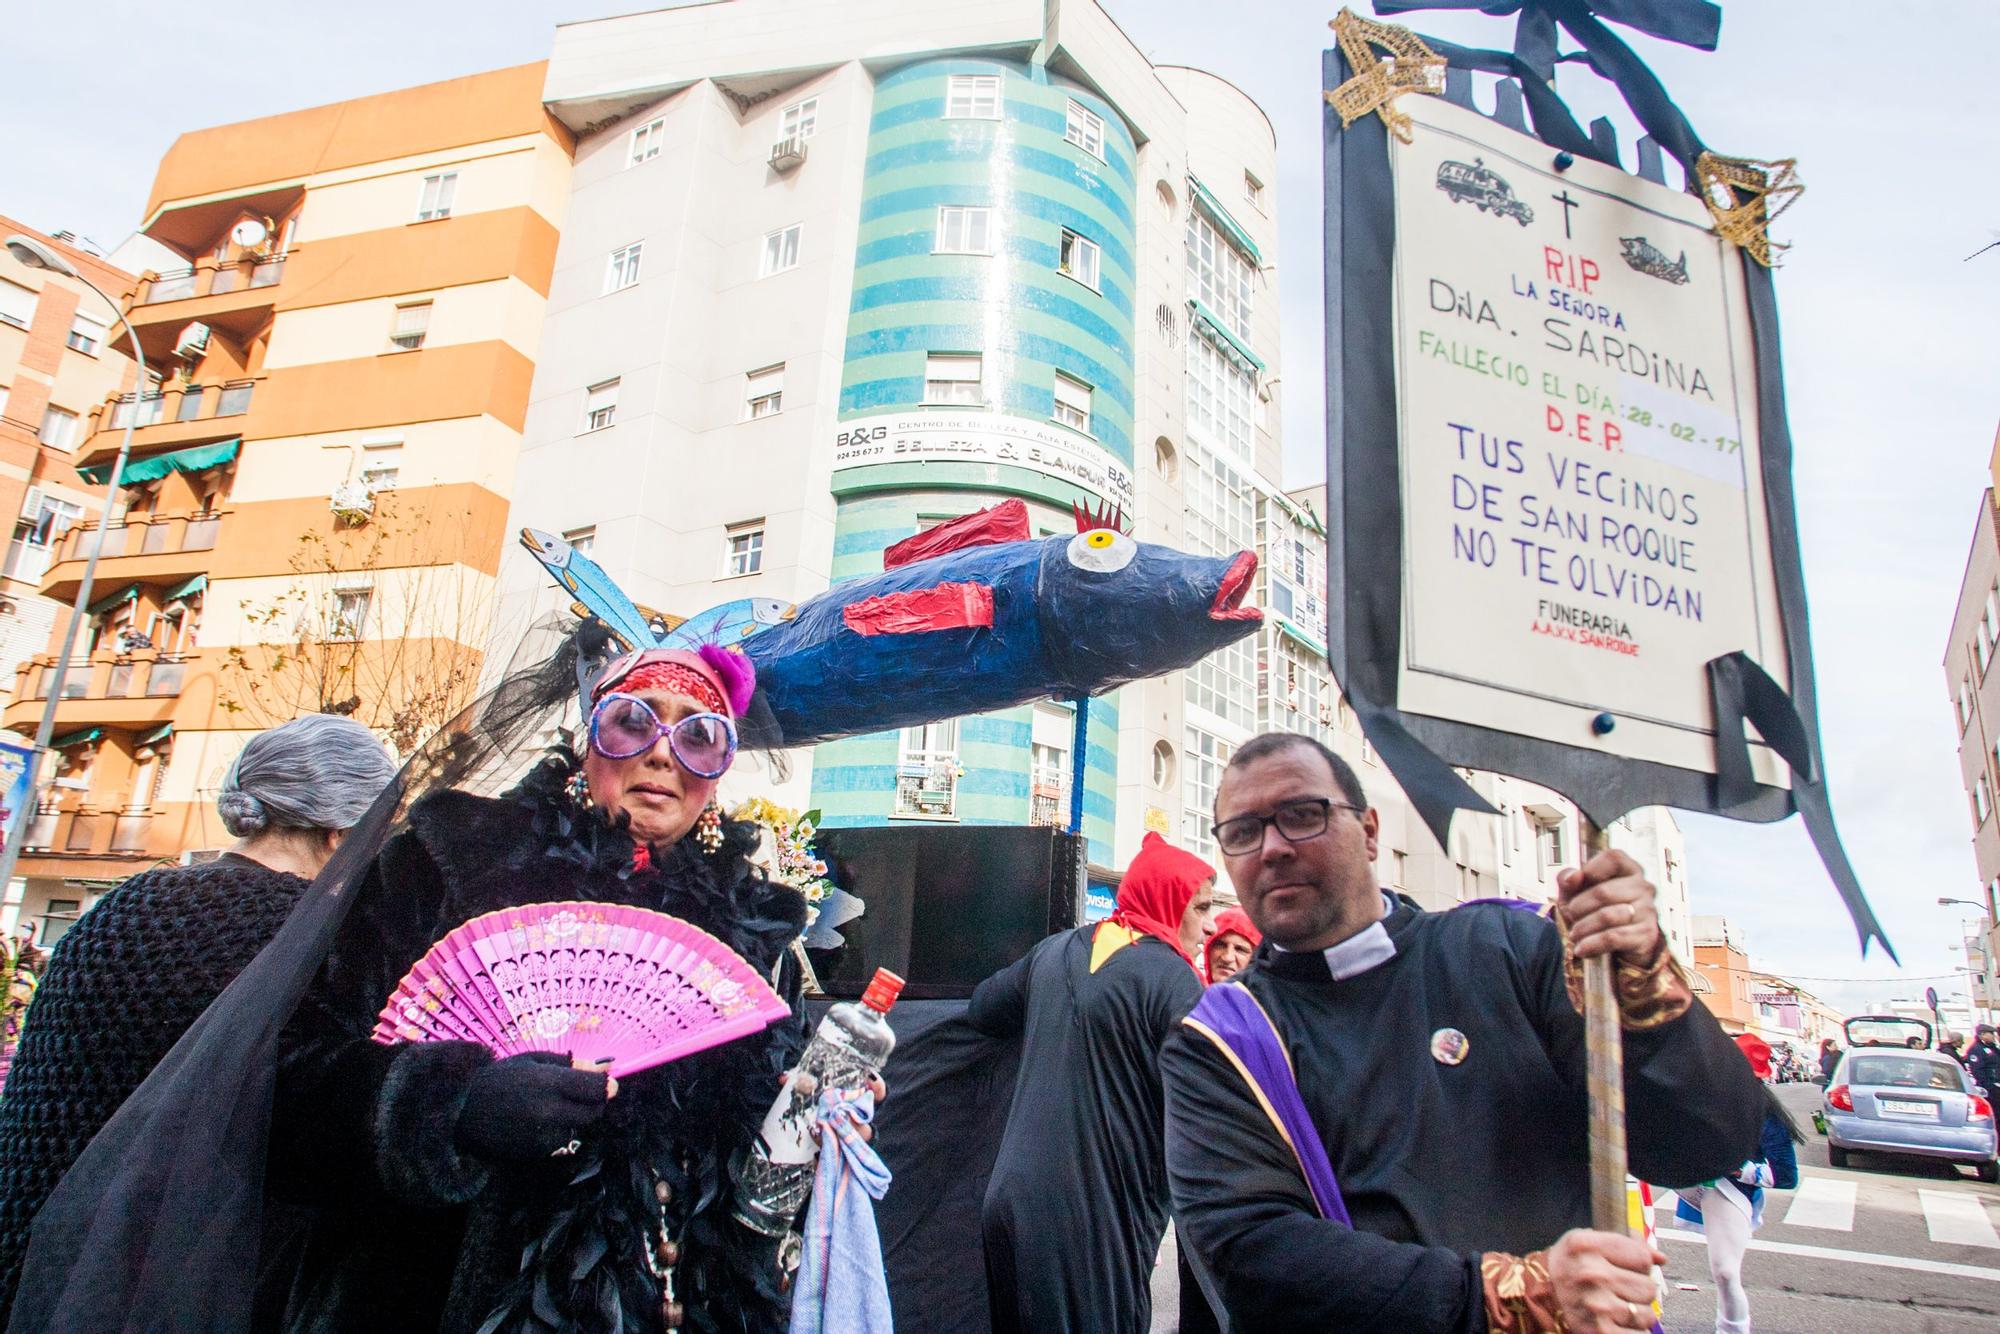 GALERÍA | Repasa a los últimos años de Carnaval de Badajoz, en imágenes